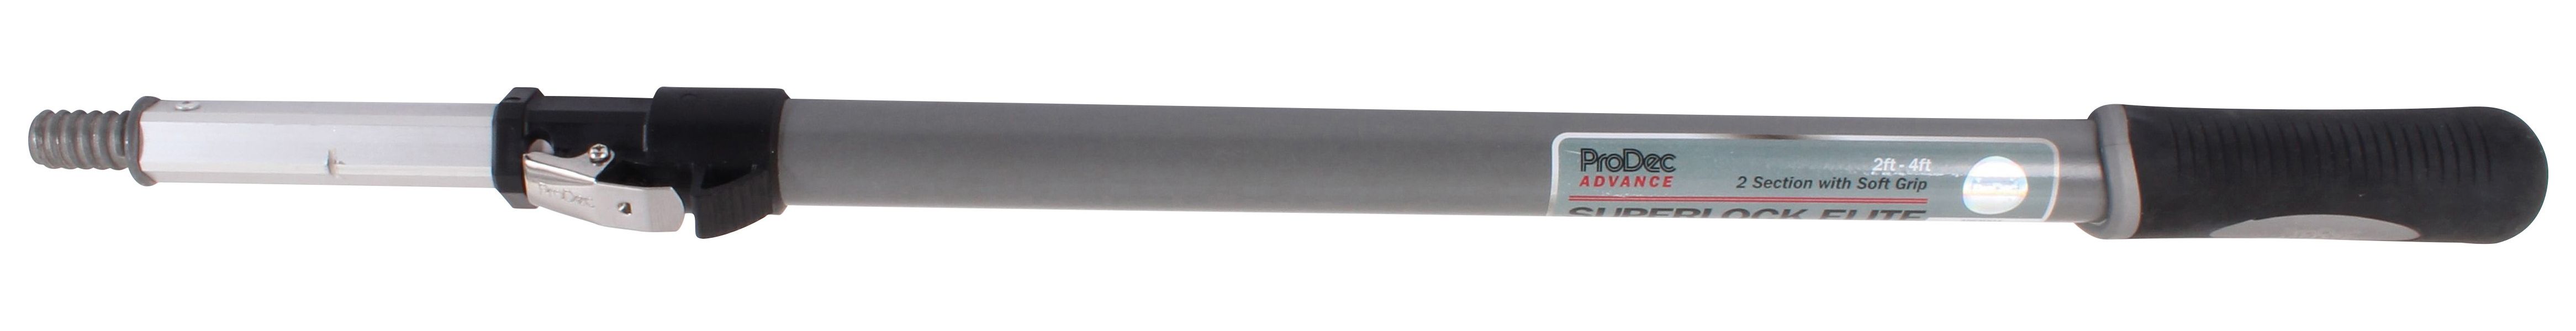 Image of ProDec Advance Super Lock Elite Extension Pole - 2ft - 4ft